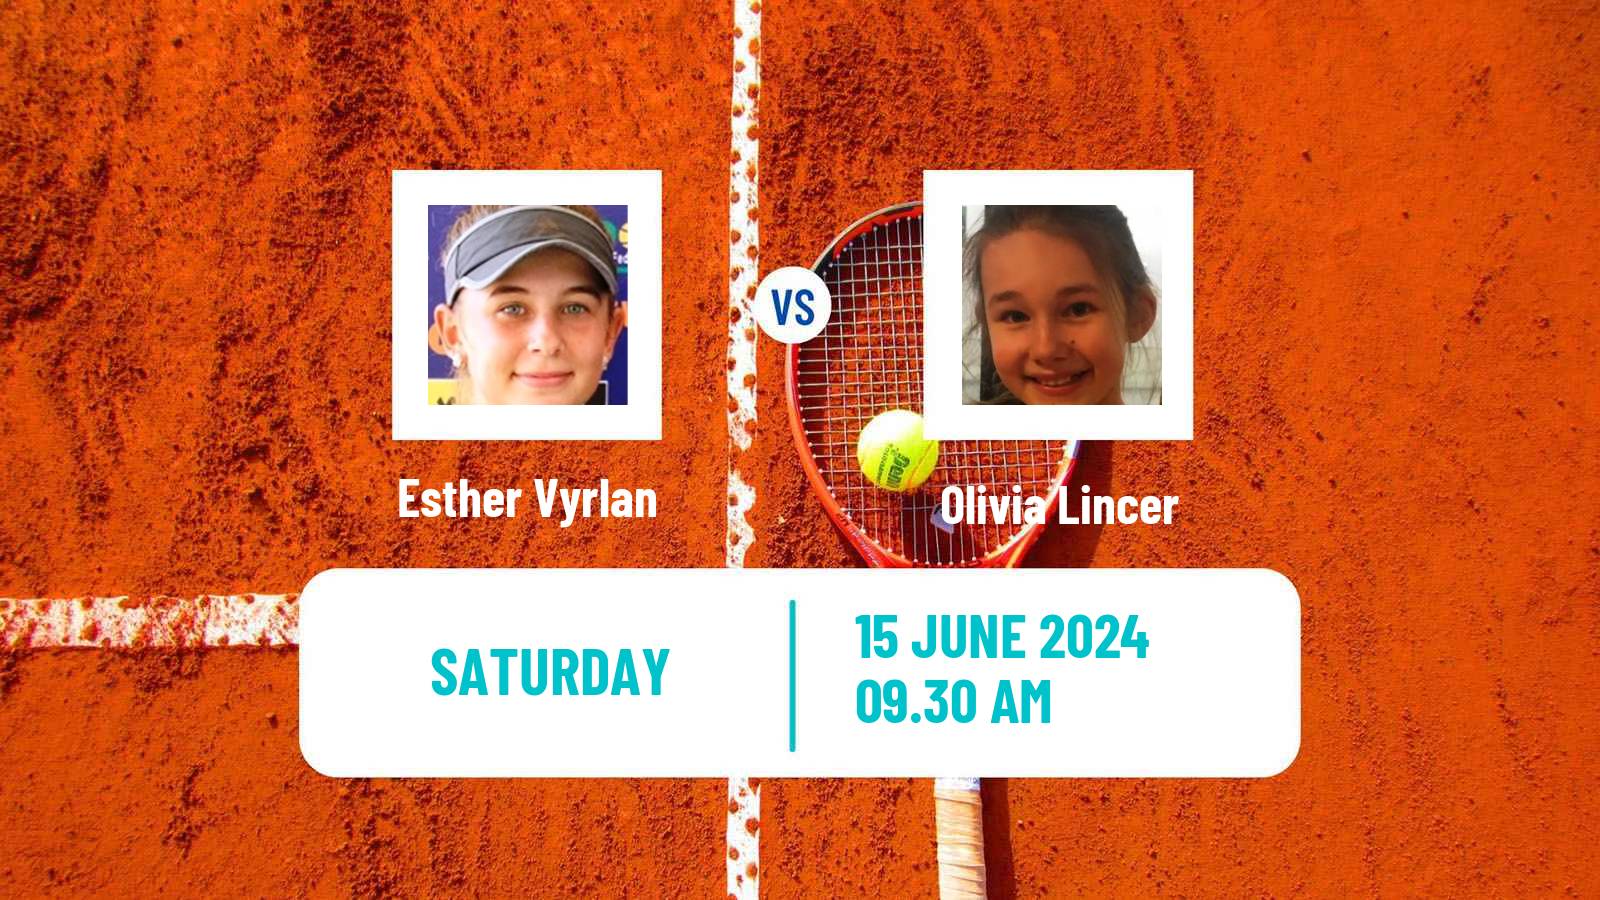 Tennis ITF W15 Santo Domingo 2 Women Esther Vyrlan - Olivia Lincer